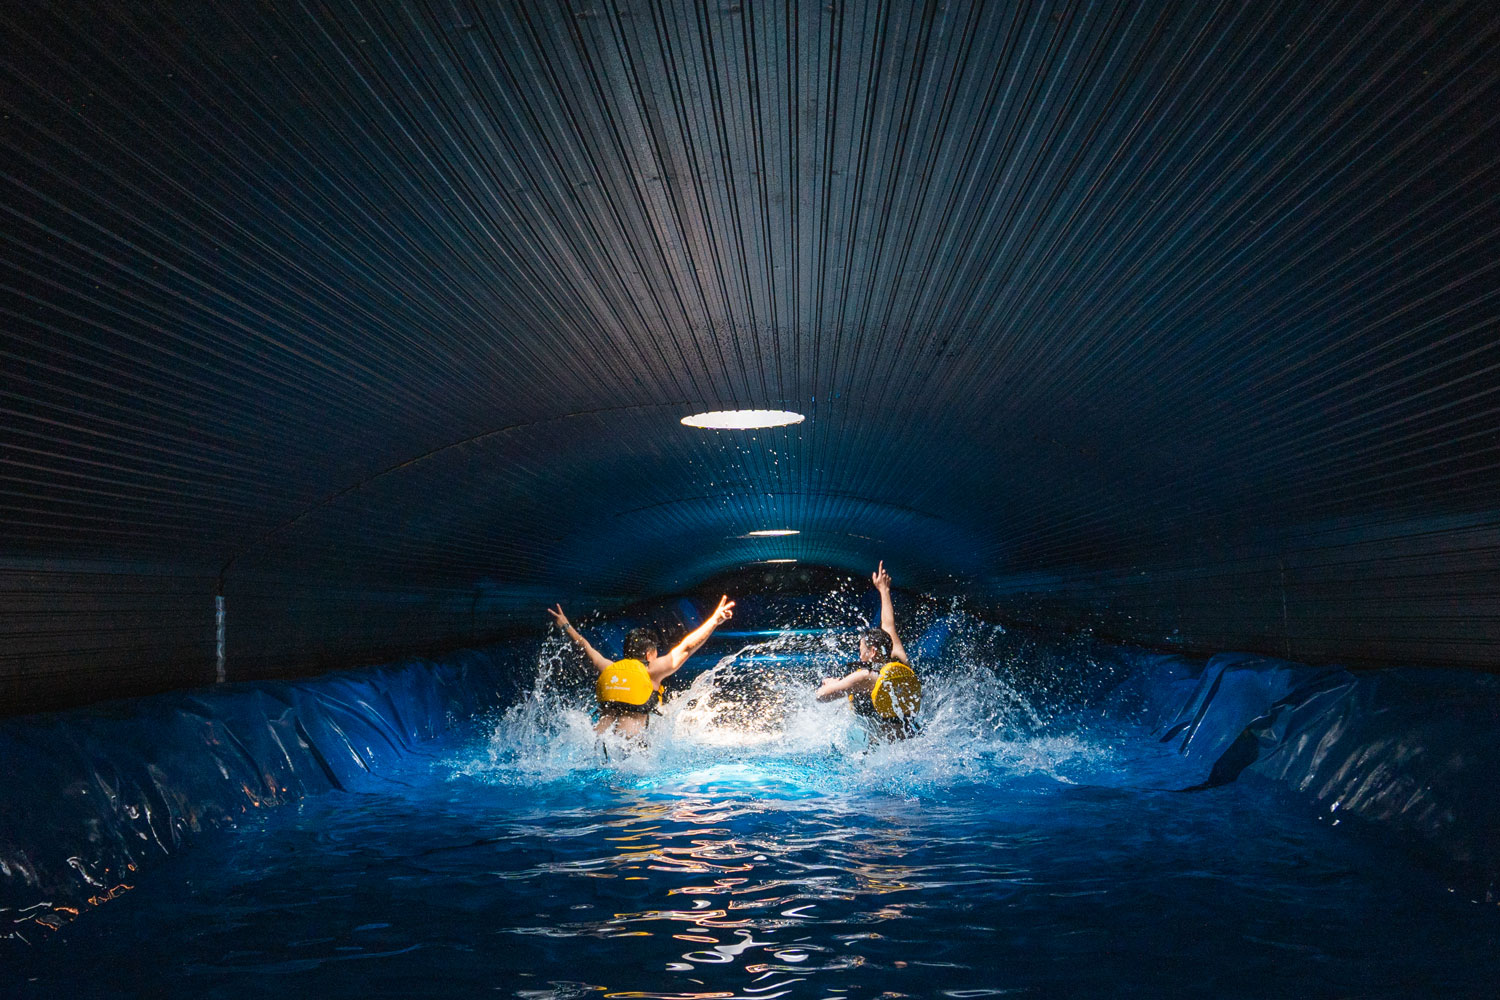 Hồ bơi ngầm mát lạnh, phù hợp cho những du khách thích bơi lội.